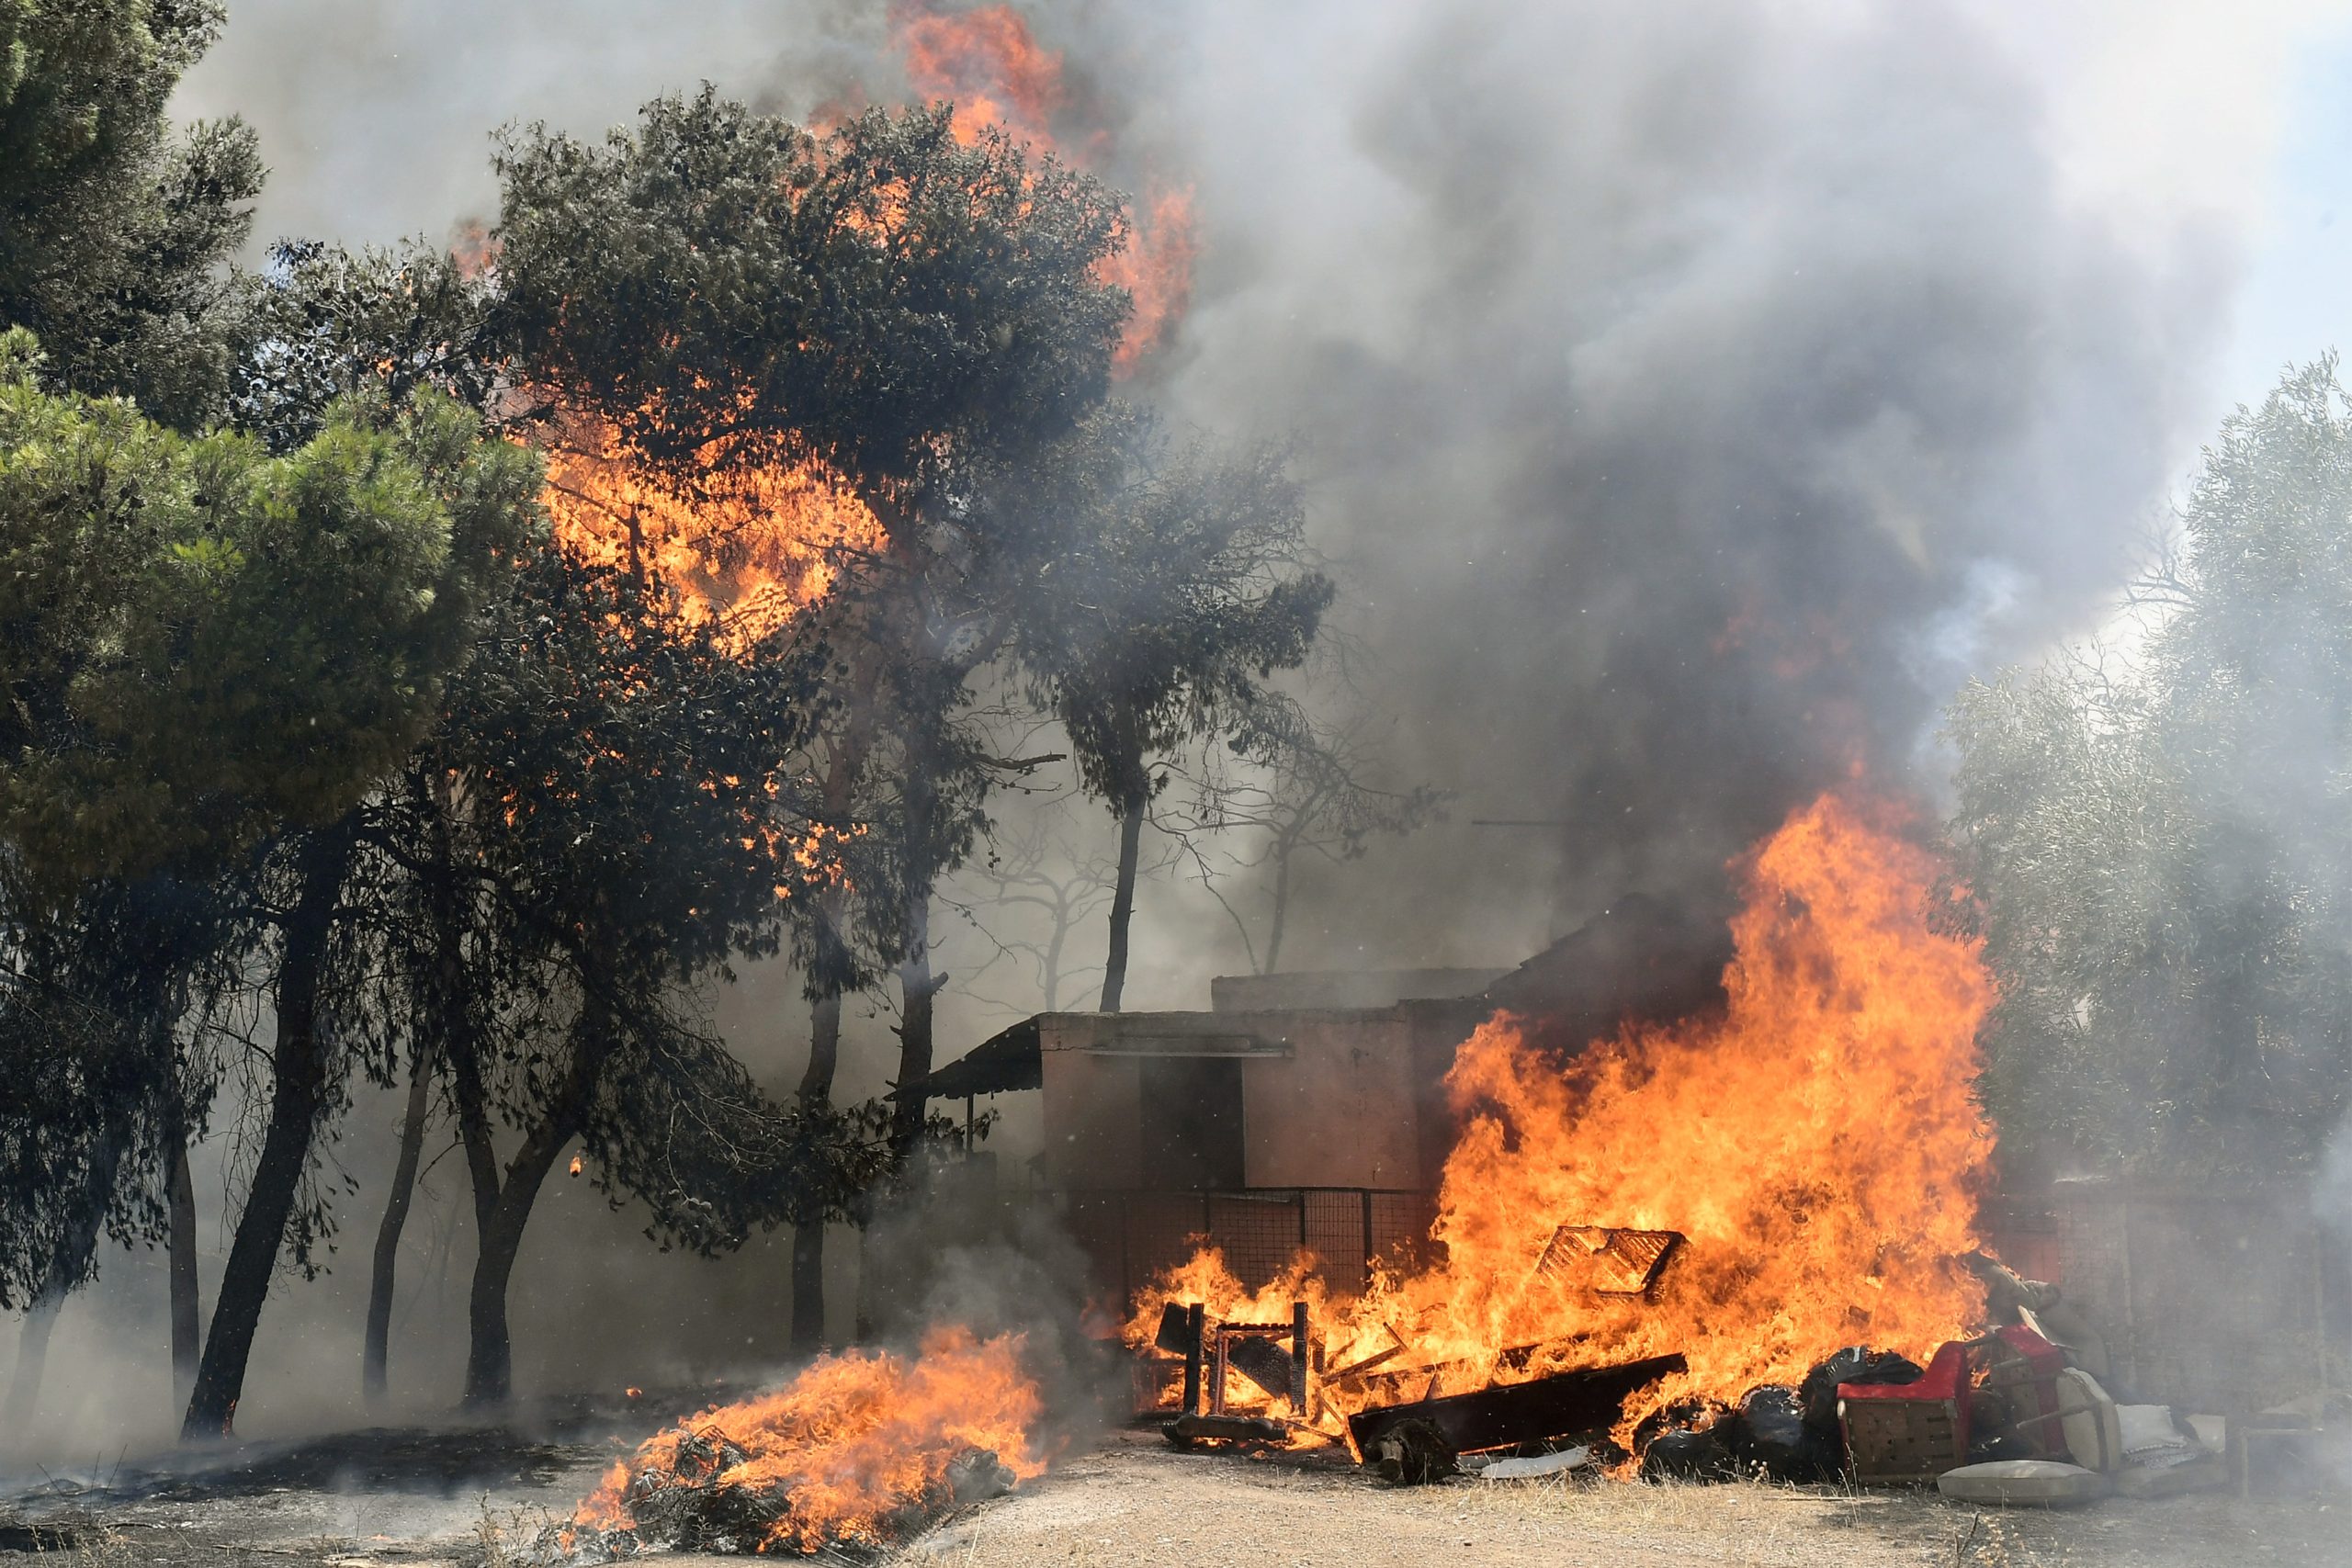 Δήμαρχος Μάνδρας-Ειδυλλίας: «Η φωτιά έρχεται με μεγάλη ταχύτητα – Ο κόσμος κατευθύνεται προς την Ελευσίνα» – Pronews.gr